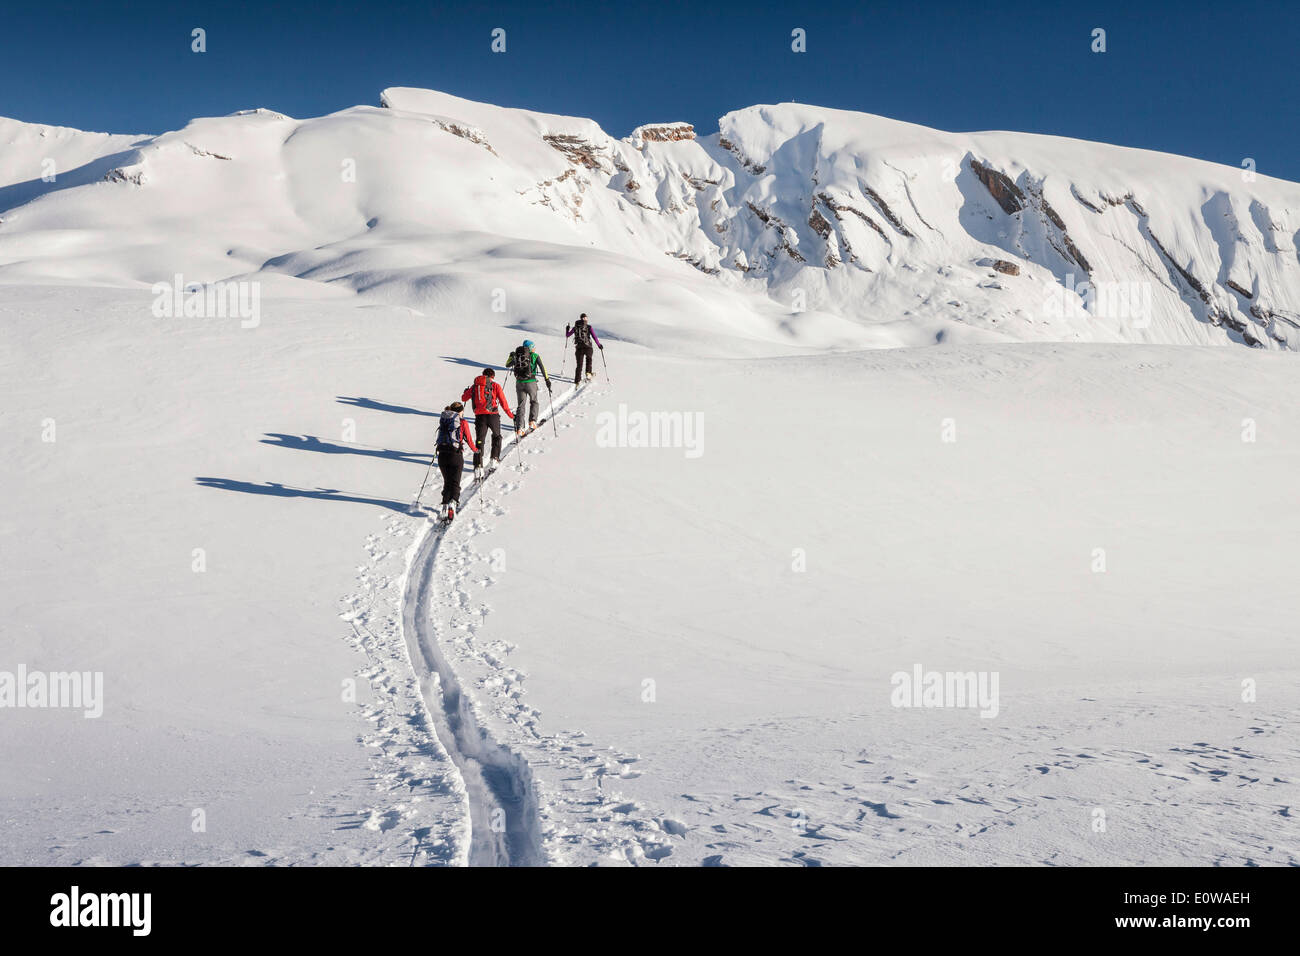 Ski tourers climbing Seekofel mountain, Fanes-Sennes-Prags Nature Park, Dolomite Alps, Seekofel mountain at the back, Kleiner Stock Photo